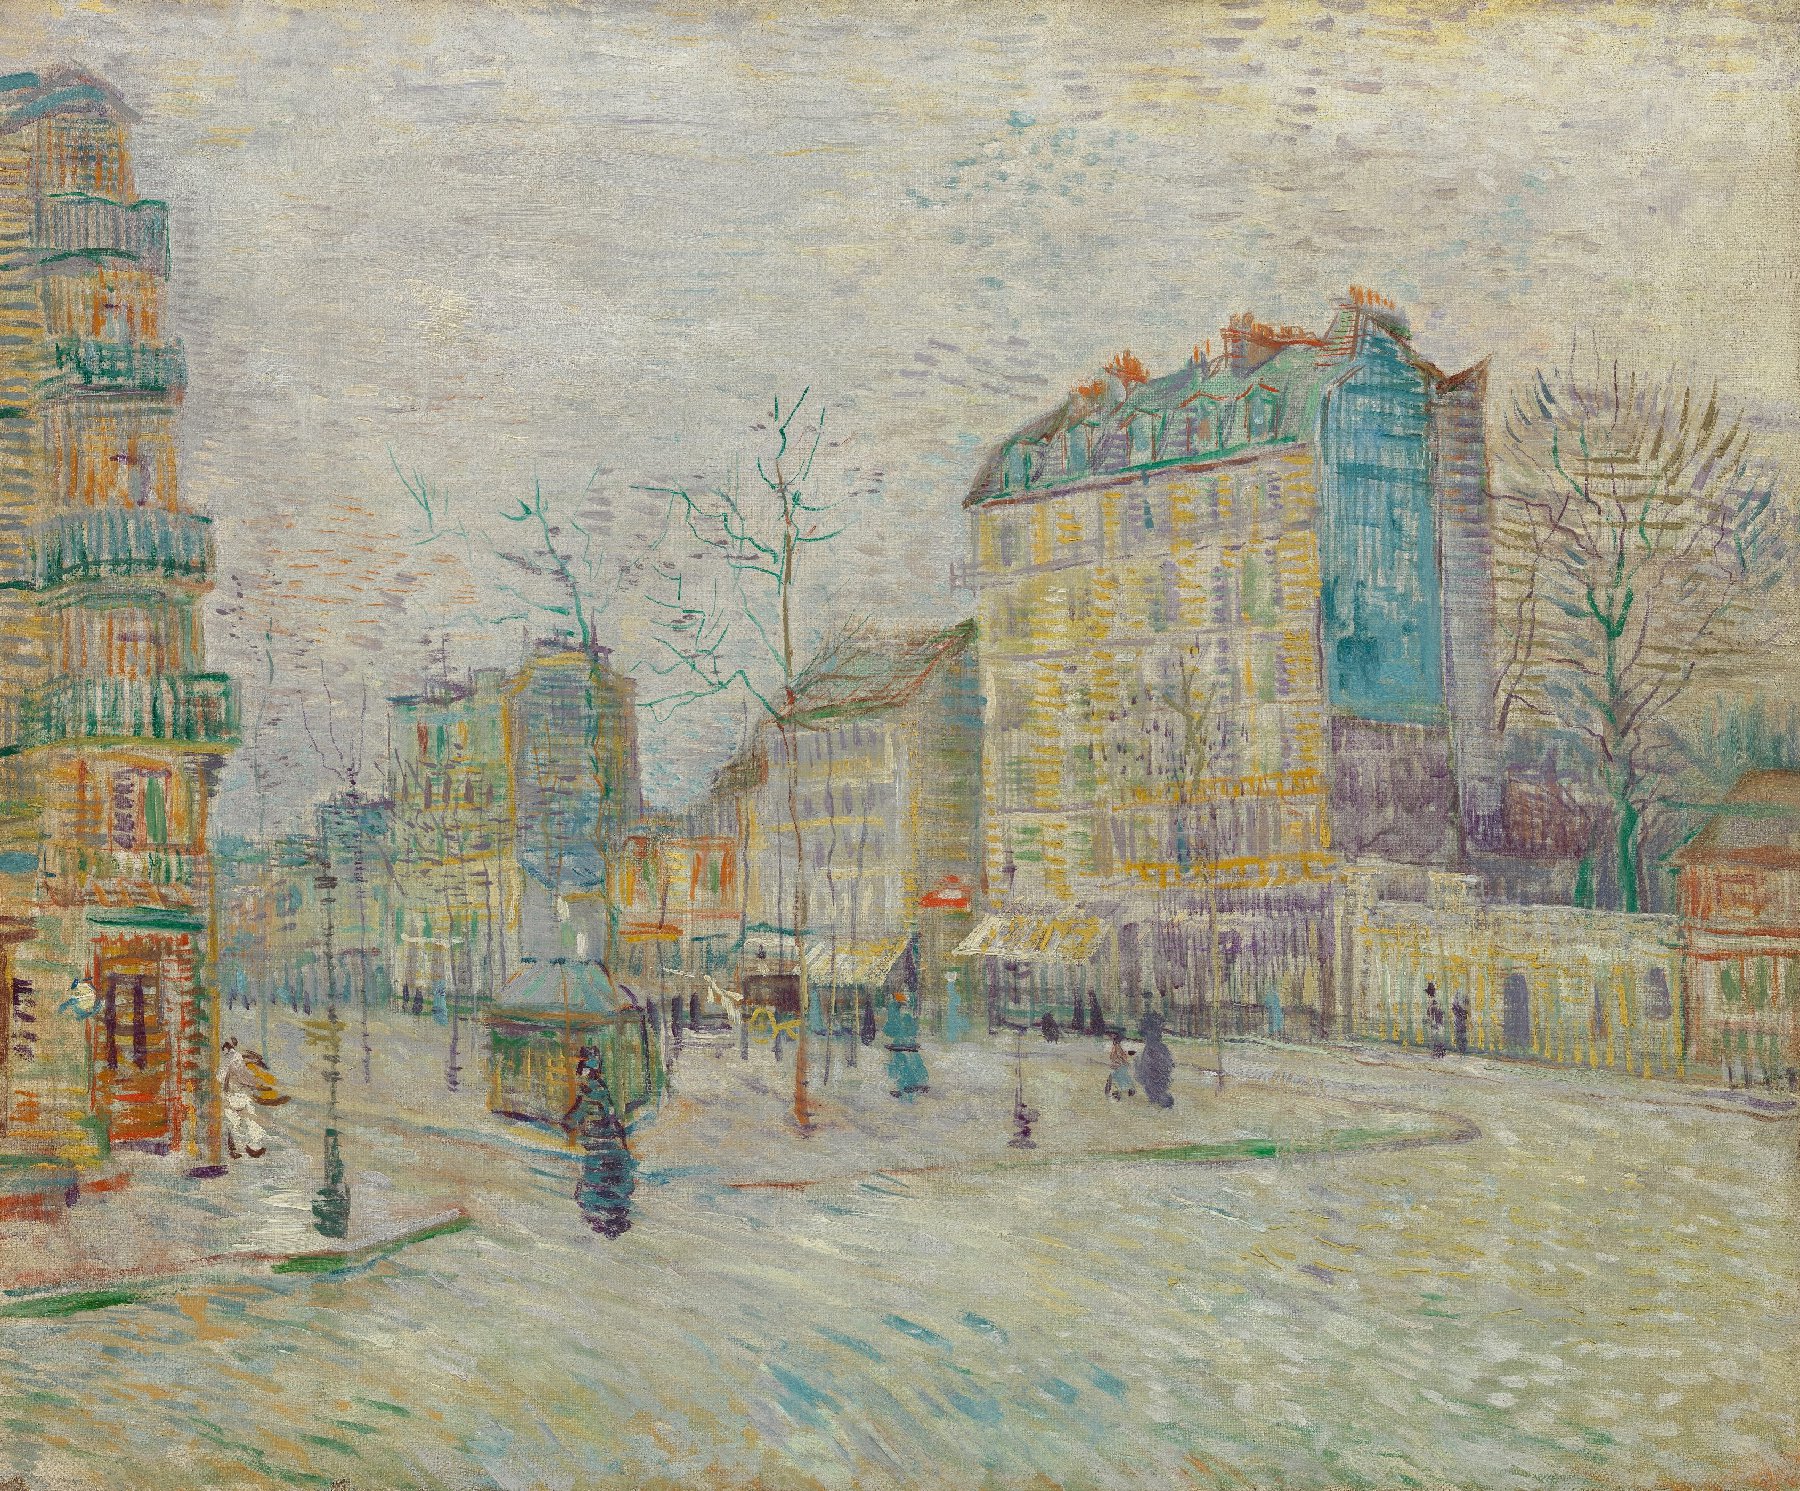 Boulevard de Clichy Vincent van Gogh (1853 - 1890), Parijs, maart-april 1887